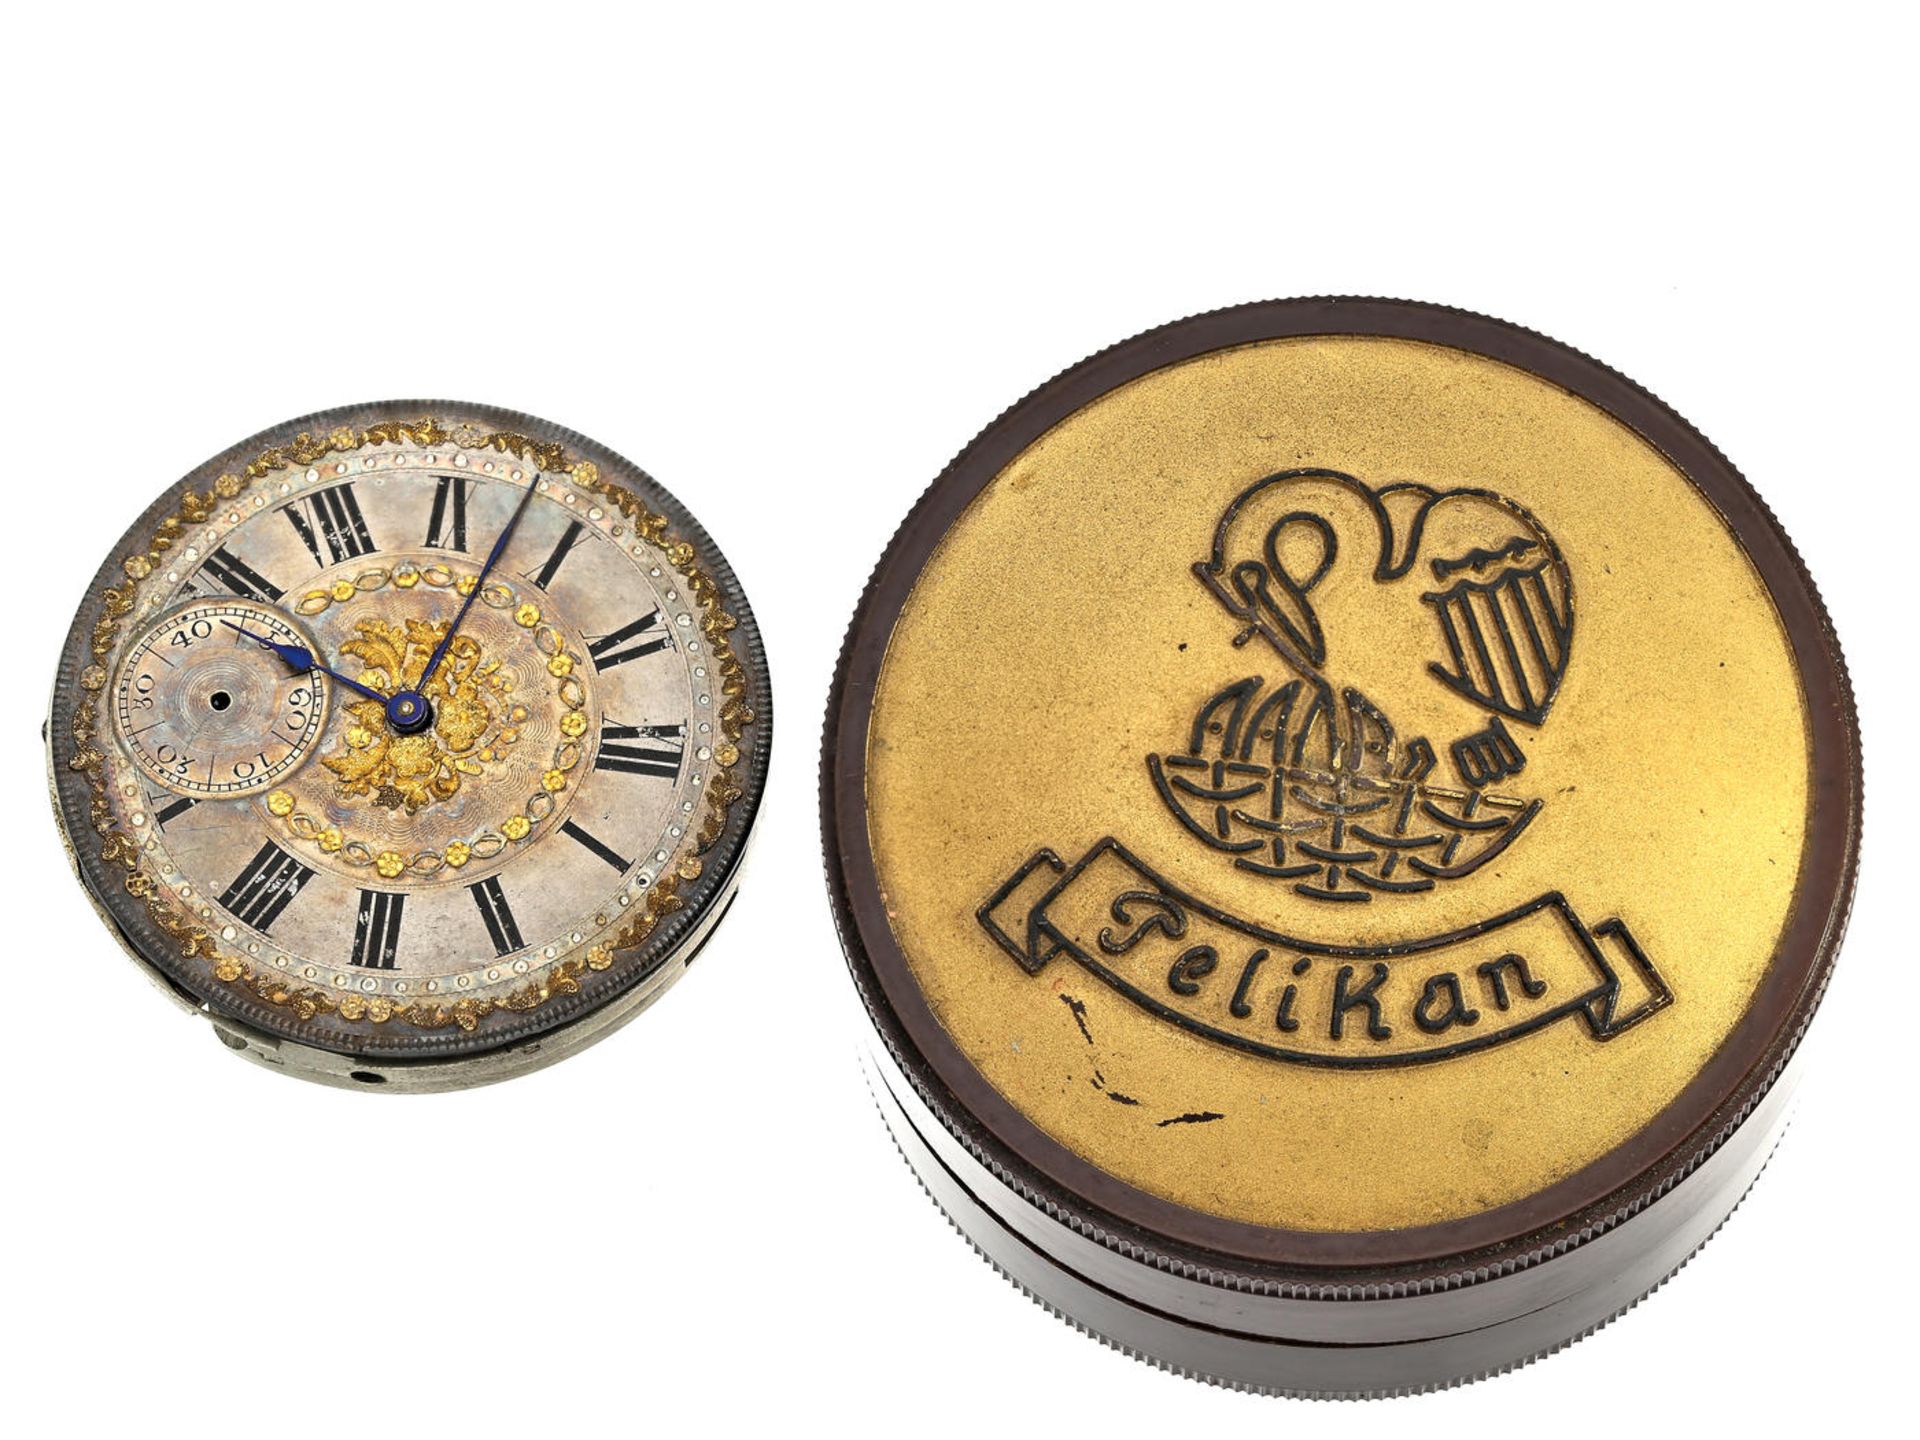 Taschenuhr: hochwertiges Taschenuhrwerk, Ankerchronometer, Charles Henri Grosclaude & Fils, Fleurier